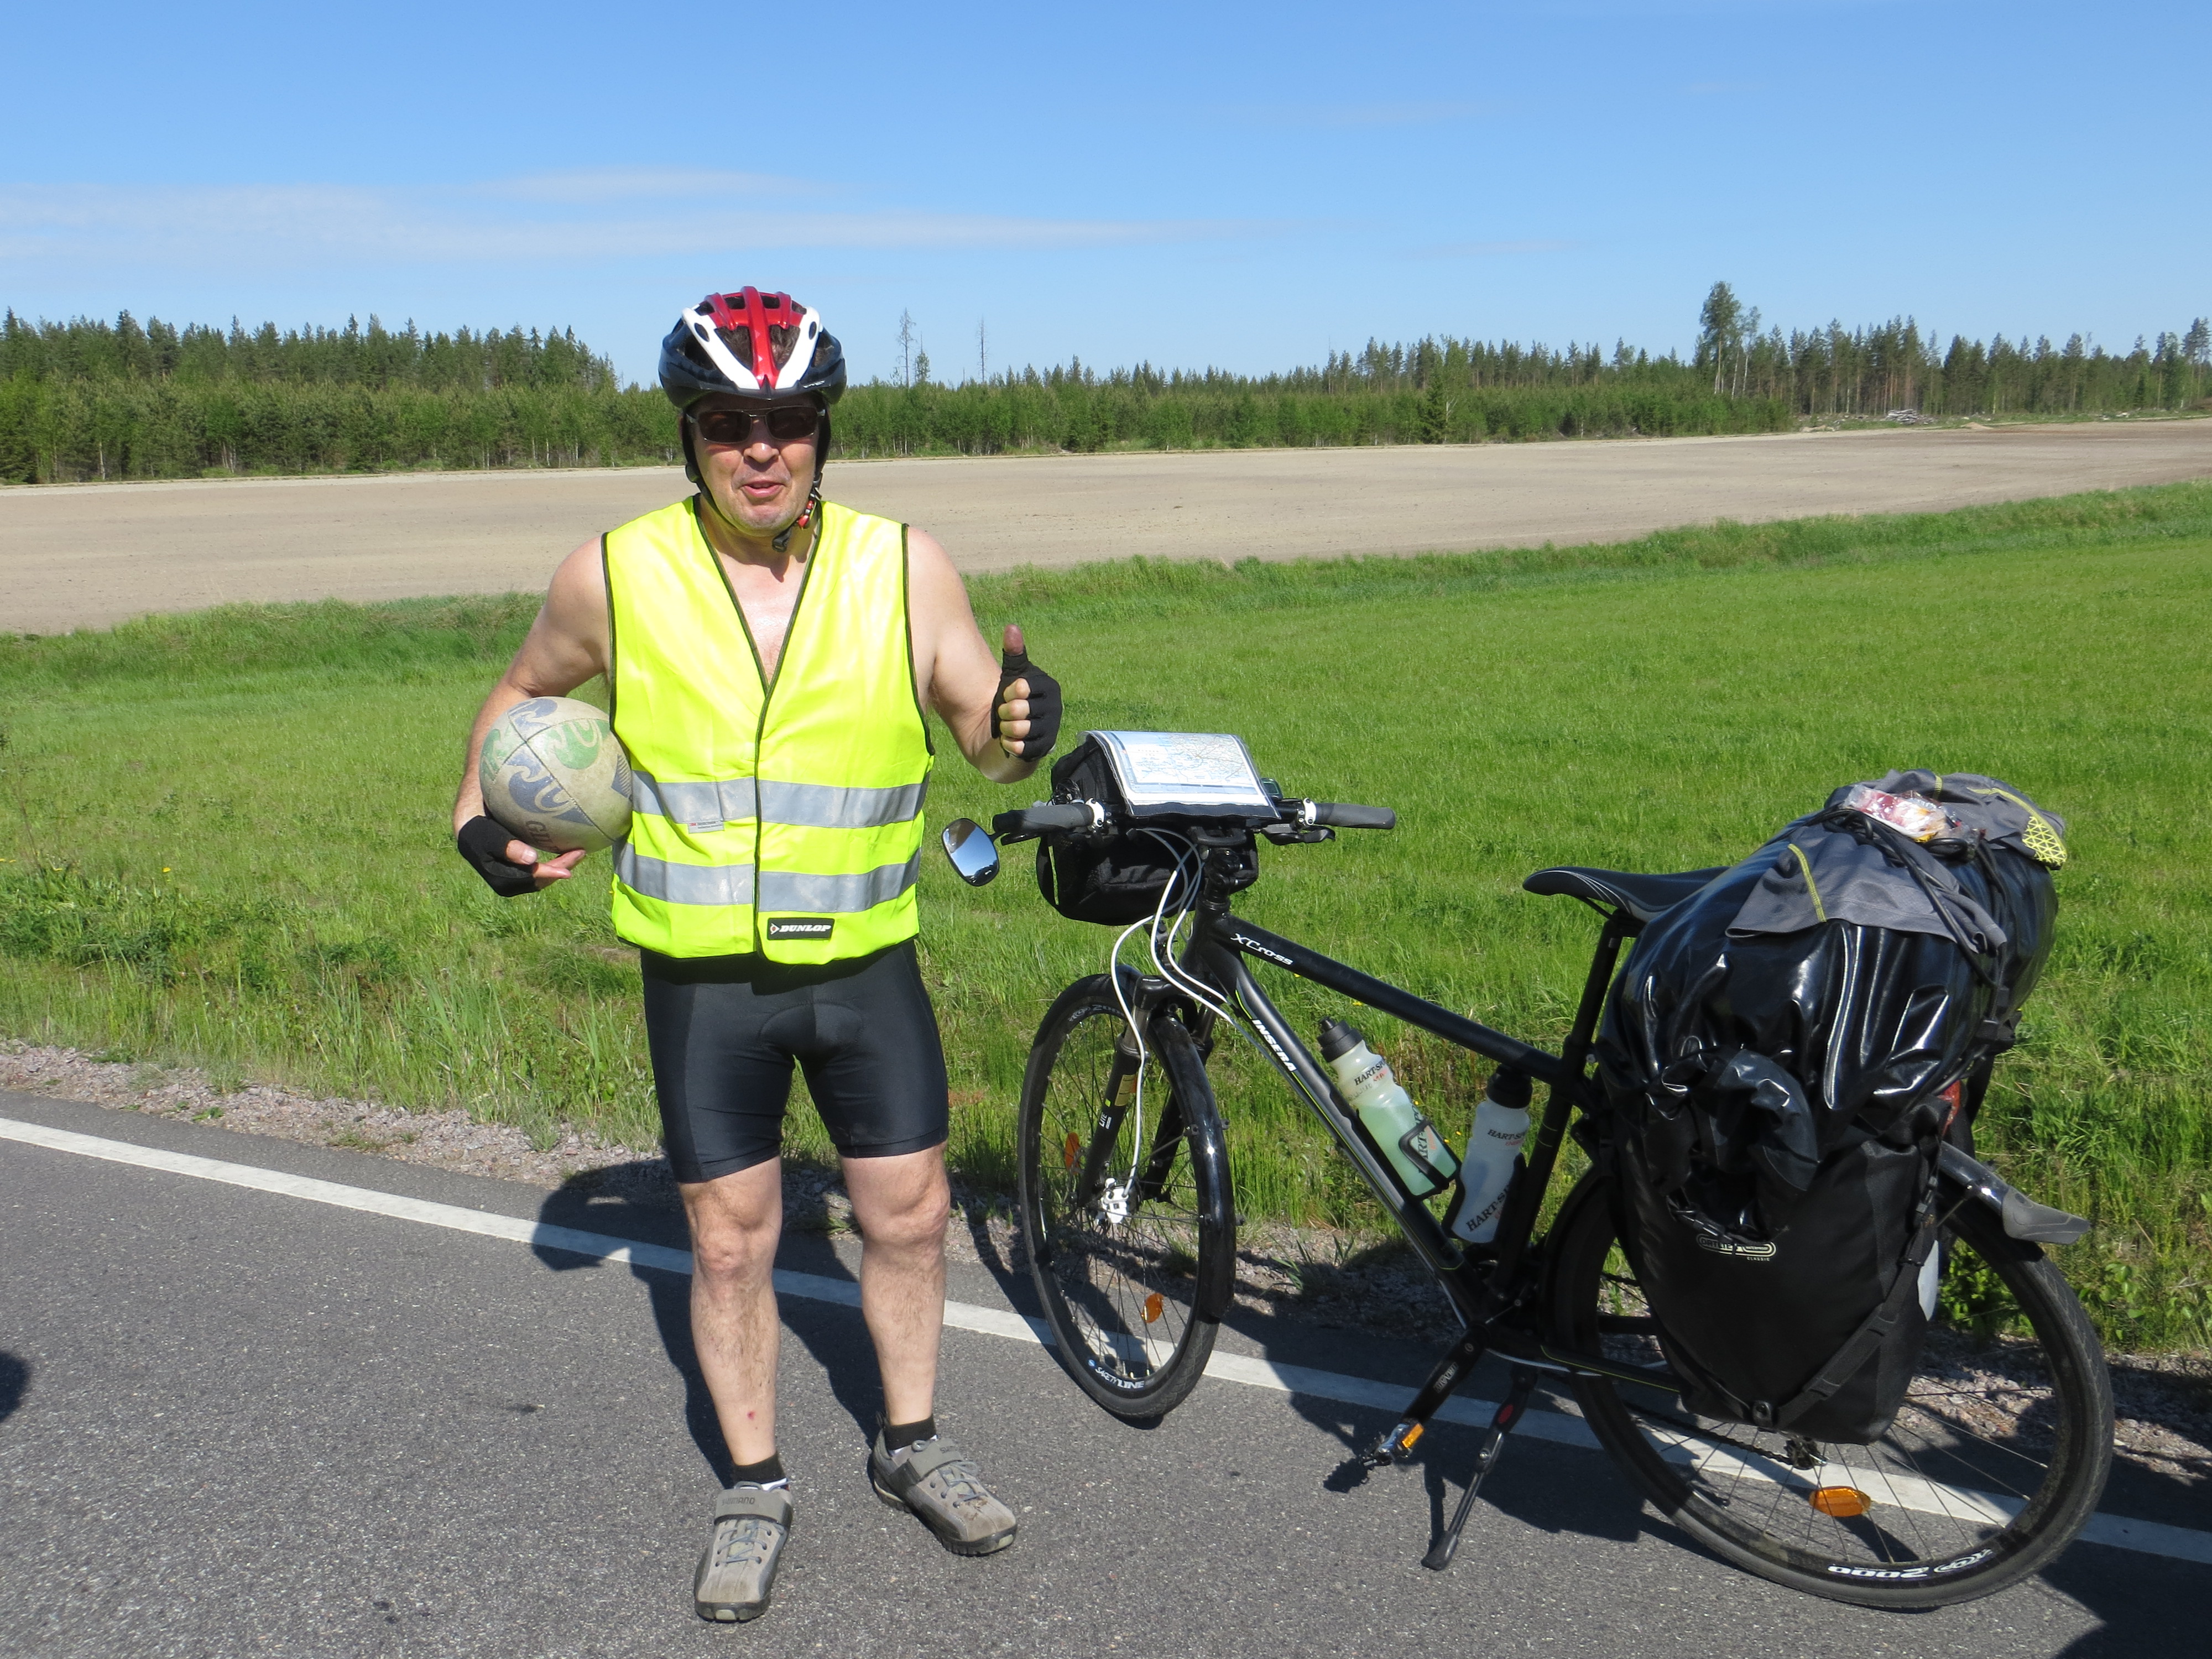 Nous croisons Esa, cycliste finlandais en route pour l'Allemagne, au milieu de la pampa.. seulement quelques minutes d'échanges mais déjà une belle rencontre